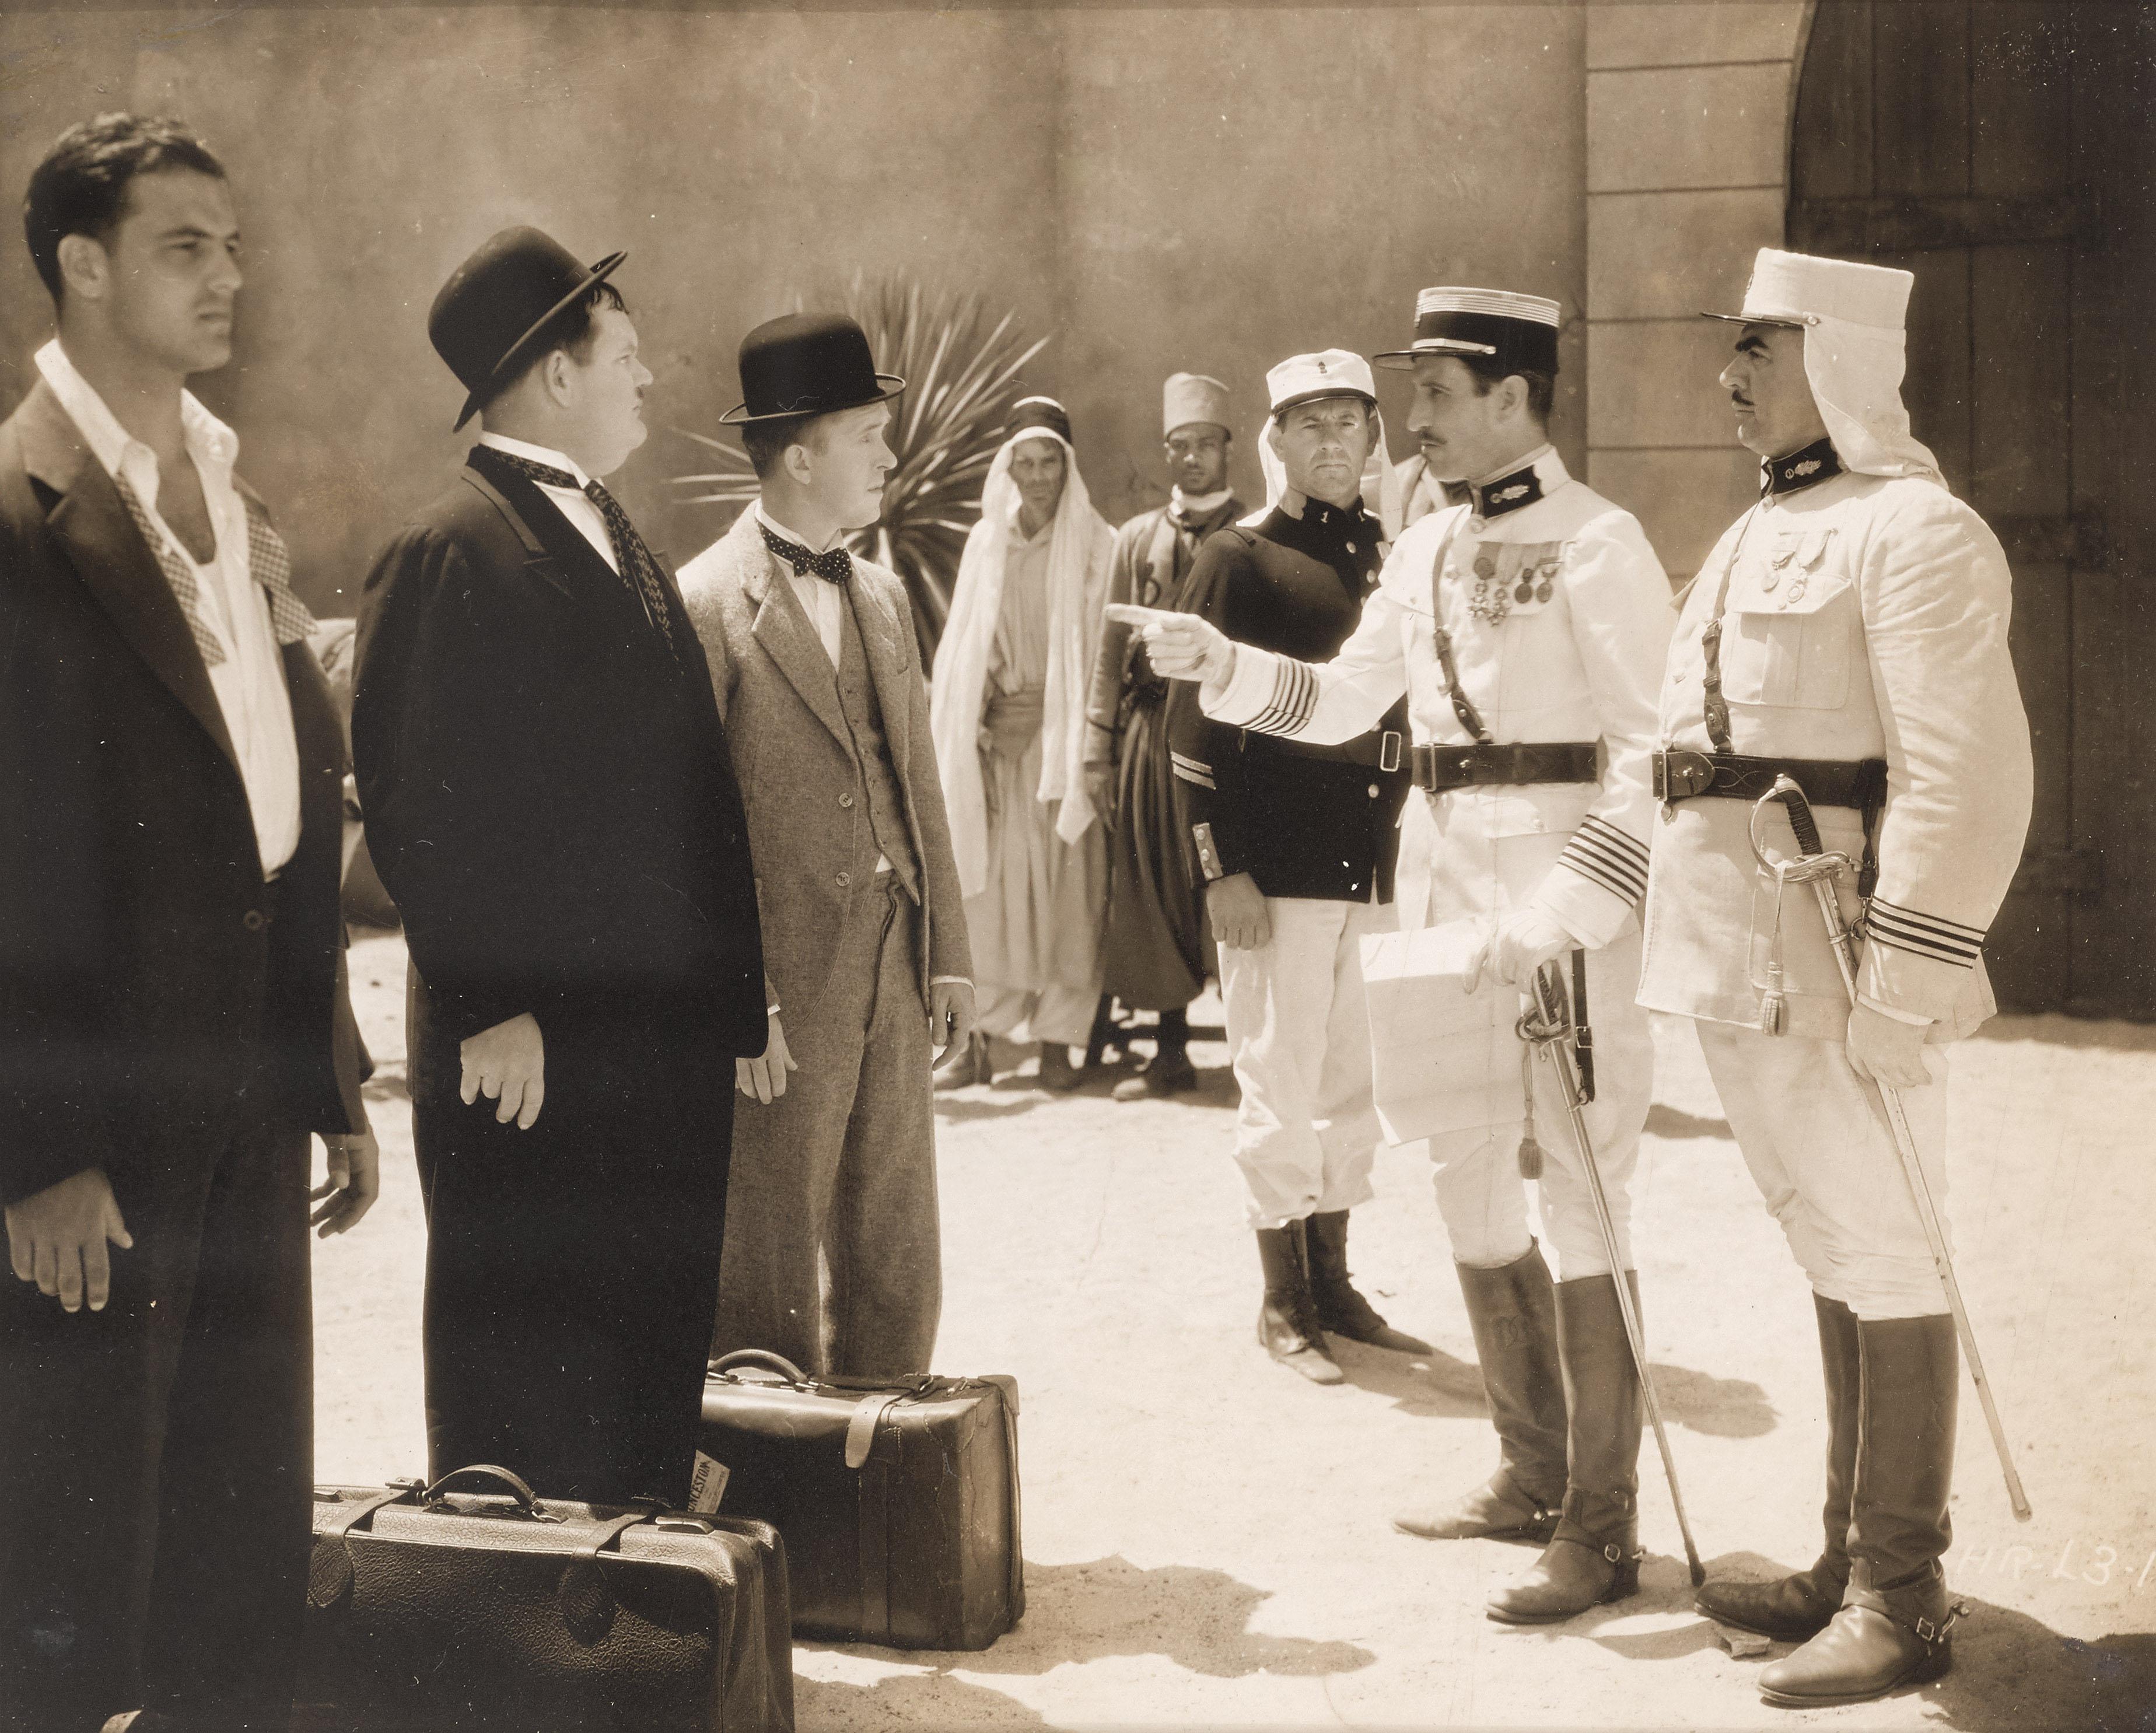 Original US-Studiofotografie für die Kurzfilmkomödie Beau Hunks von 1931 mit Stan Laurel und Oliver Hardy in den Hauptrollen. Die Regie bei diesem Film führte James W. Horne.
Dieses Werk ist in einem Sapele-Holzrahmen mit säurefreien Passepartouts